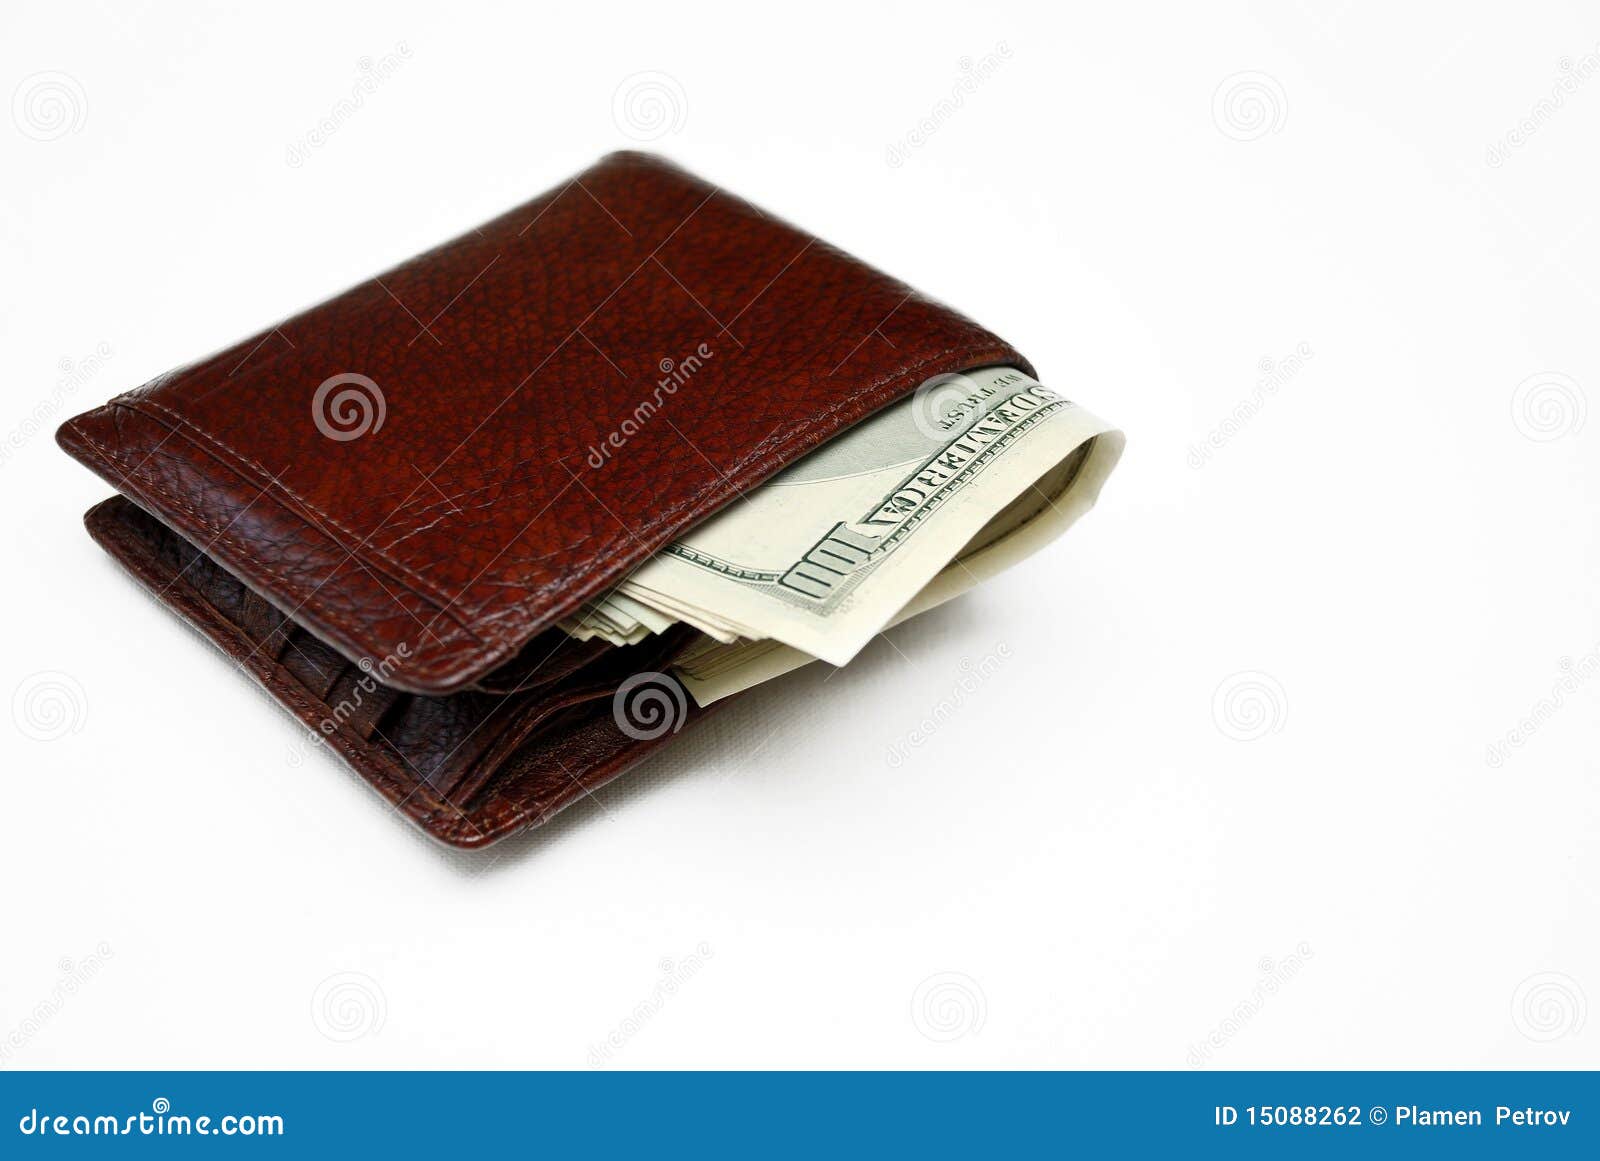 wallet full of money.